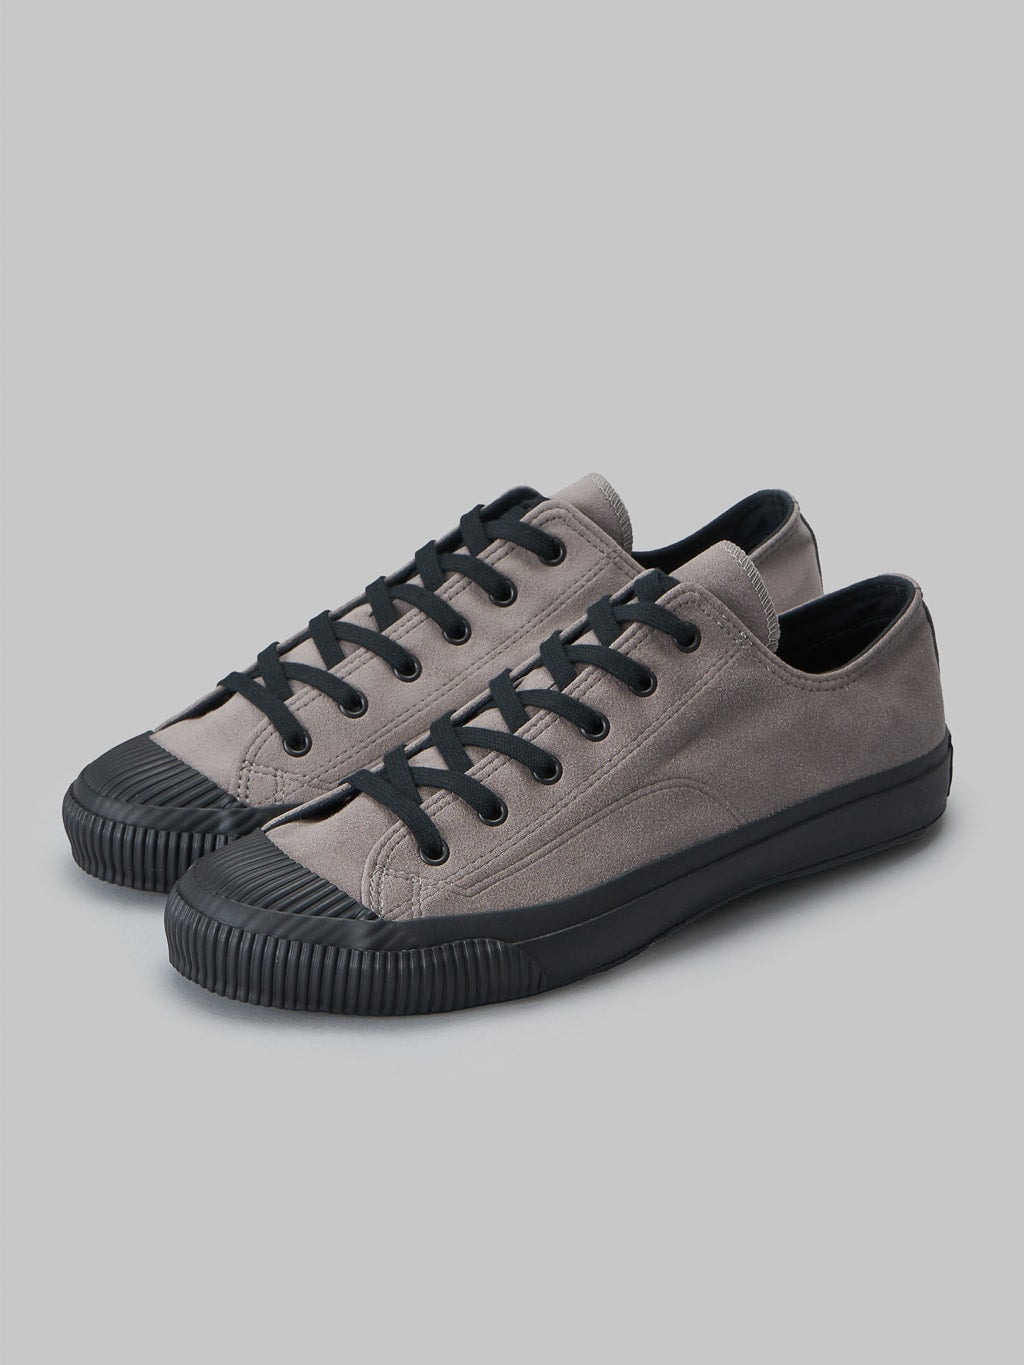 Pras shellcap low vegan sneakers suede grey black vintage inspired